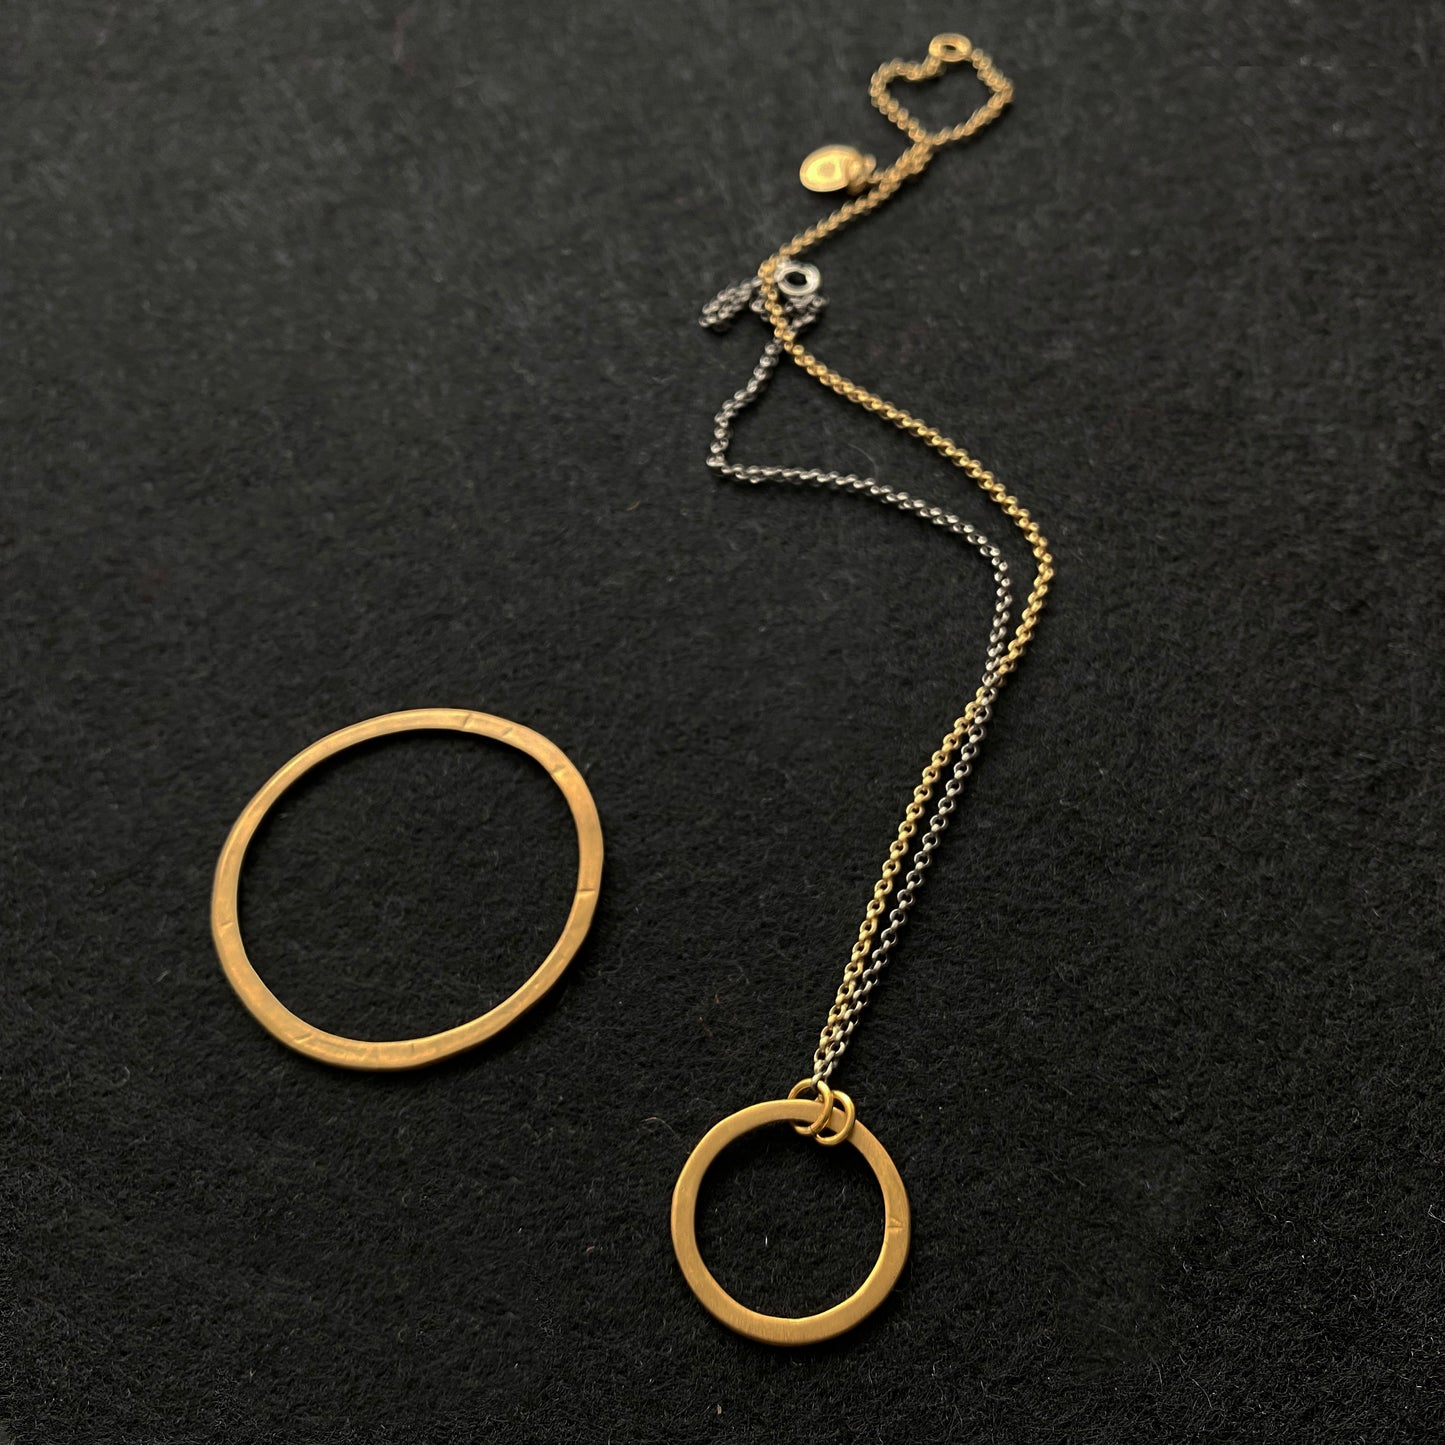 La Cala 'M' collier court avec une chaîne argent plaqué or + ruthénium